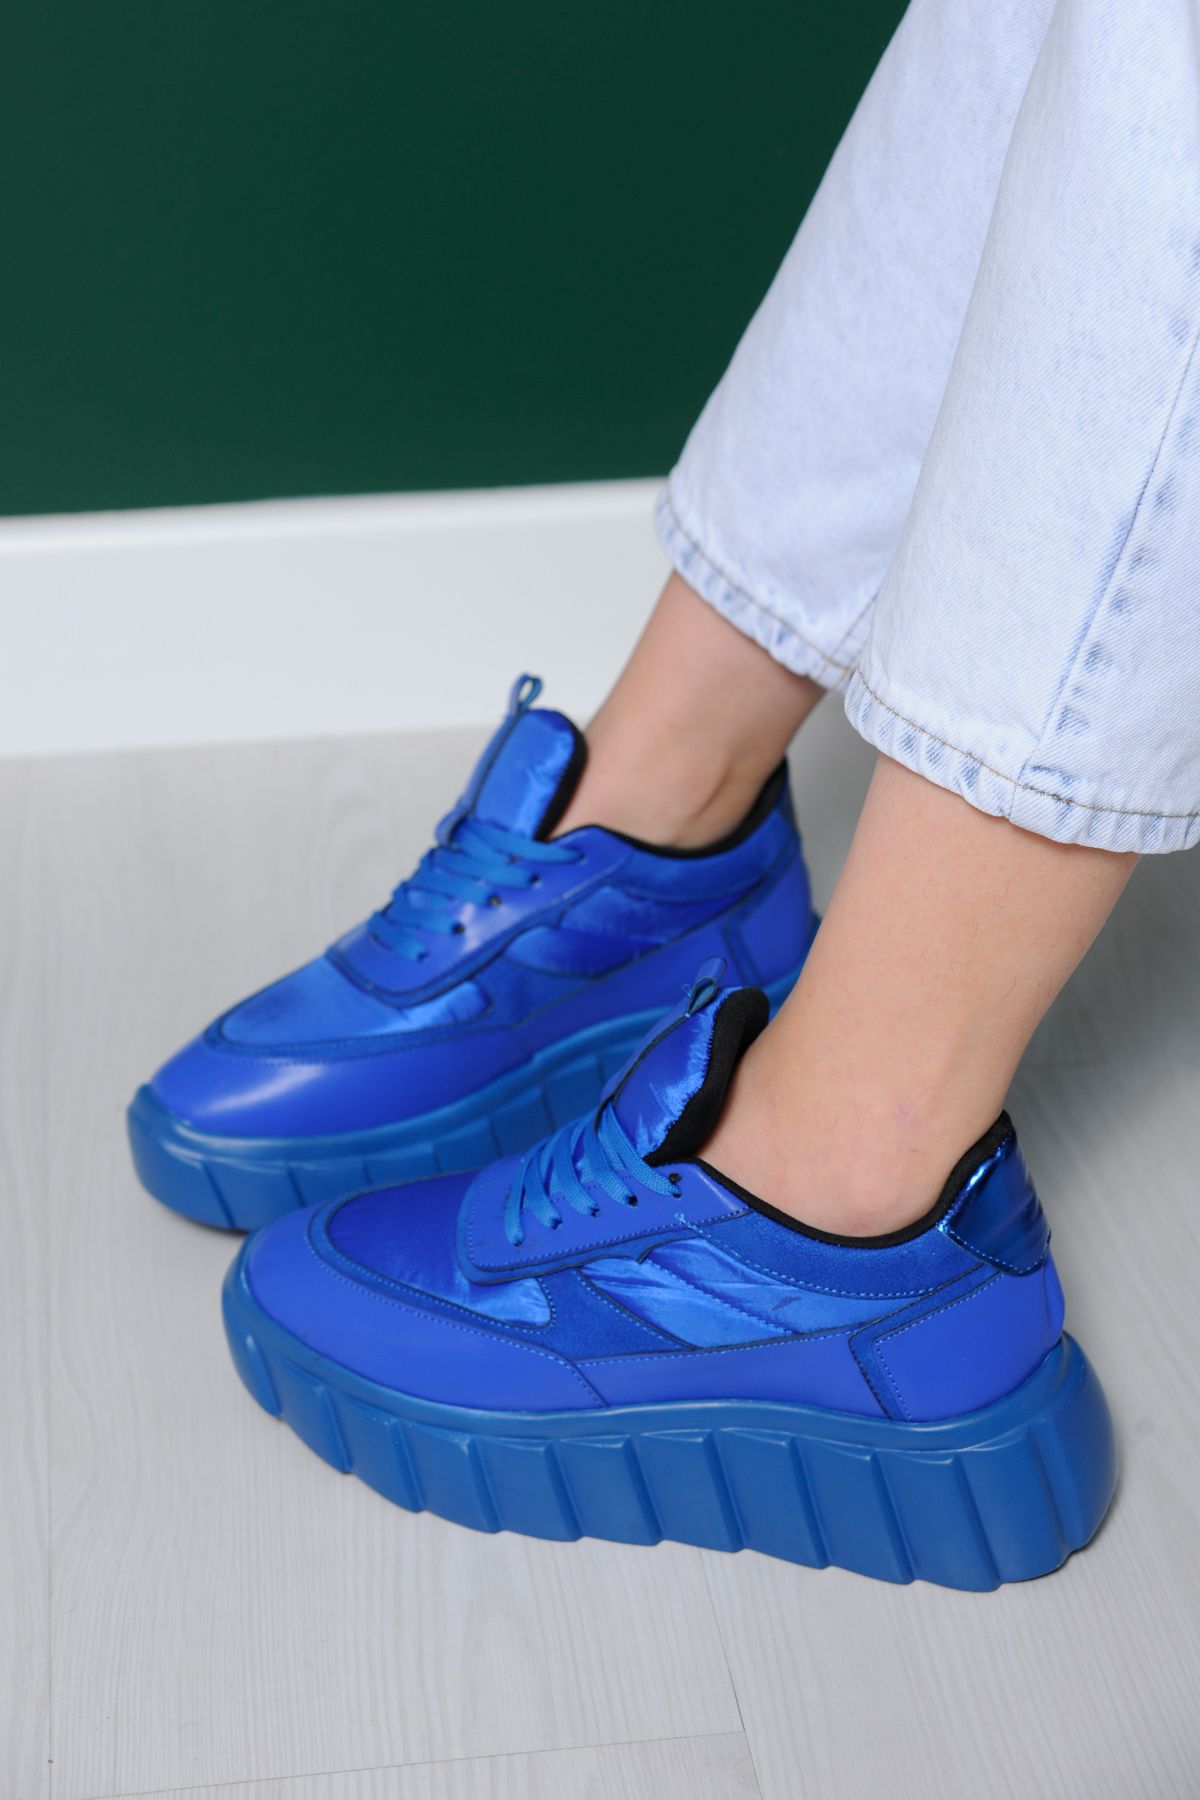 sibel durmaz Elen Mavi Bağcıklı Sneakers